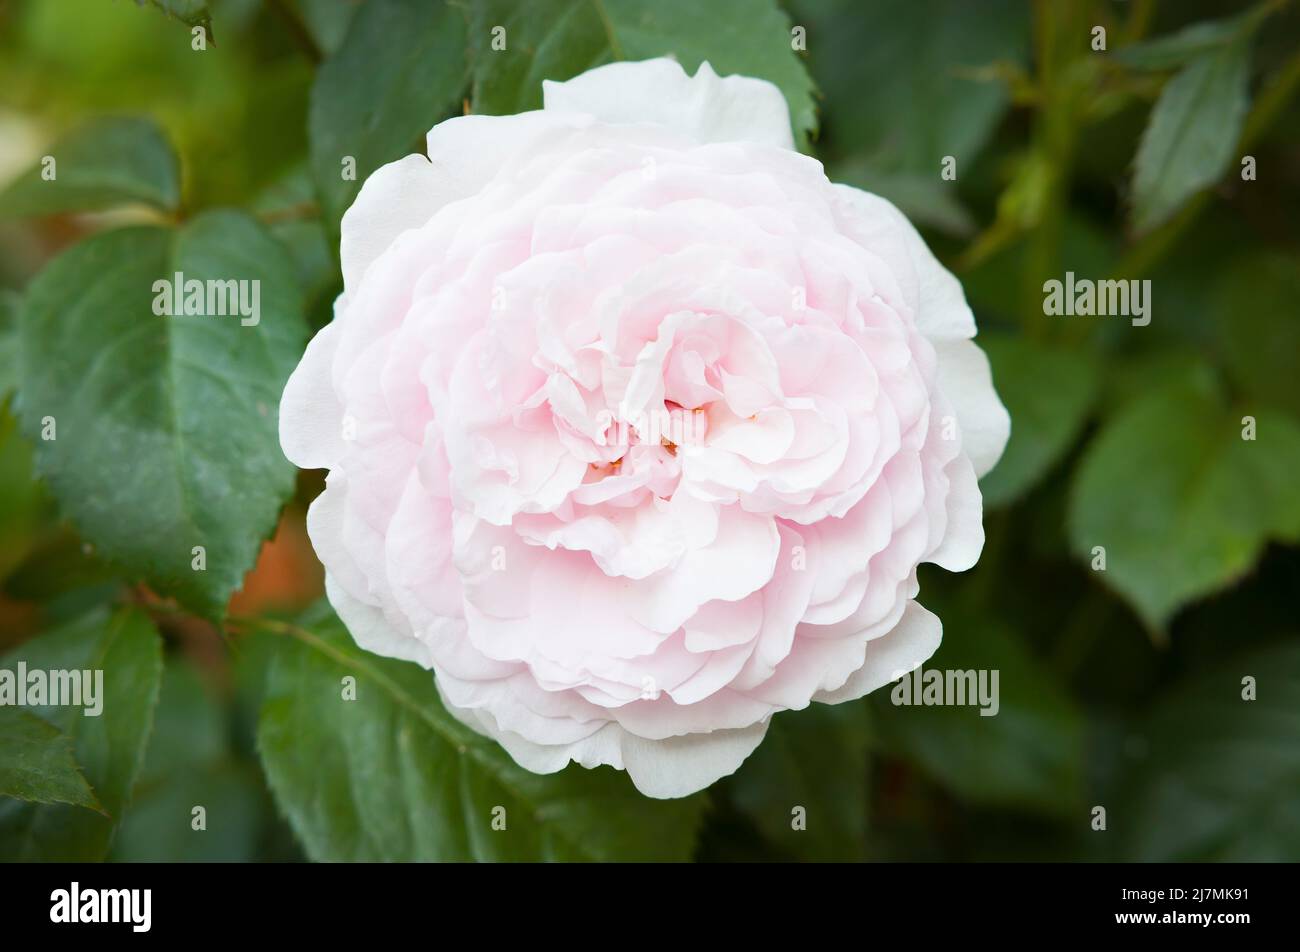 Primer plano de una sola flor de rosa que crece en una planta de arbusto de rosas en un jardín, Reino Unido Foto de stock